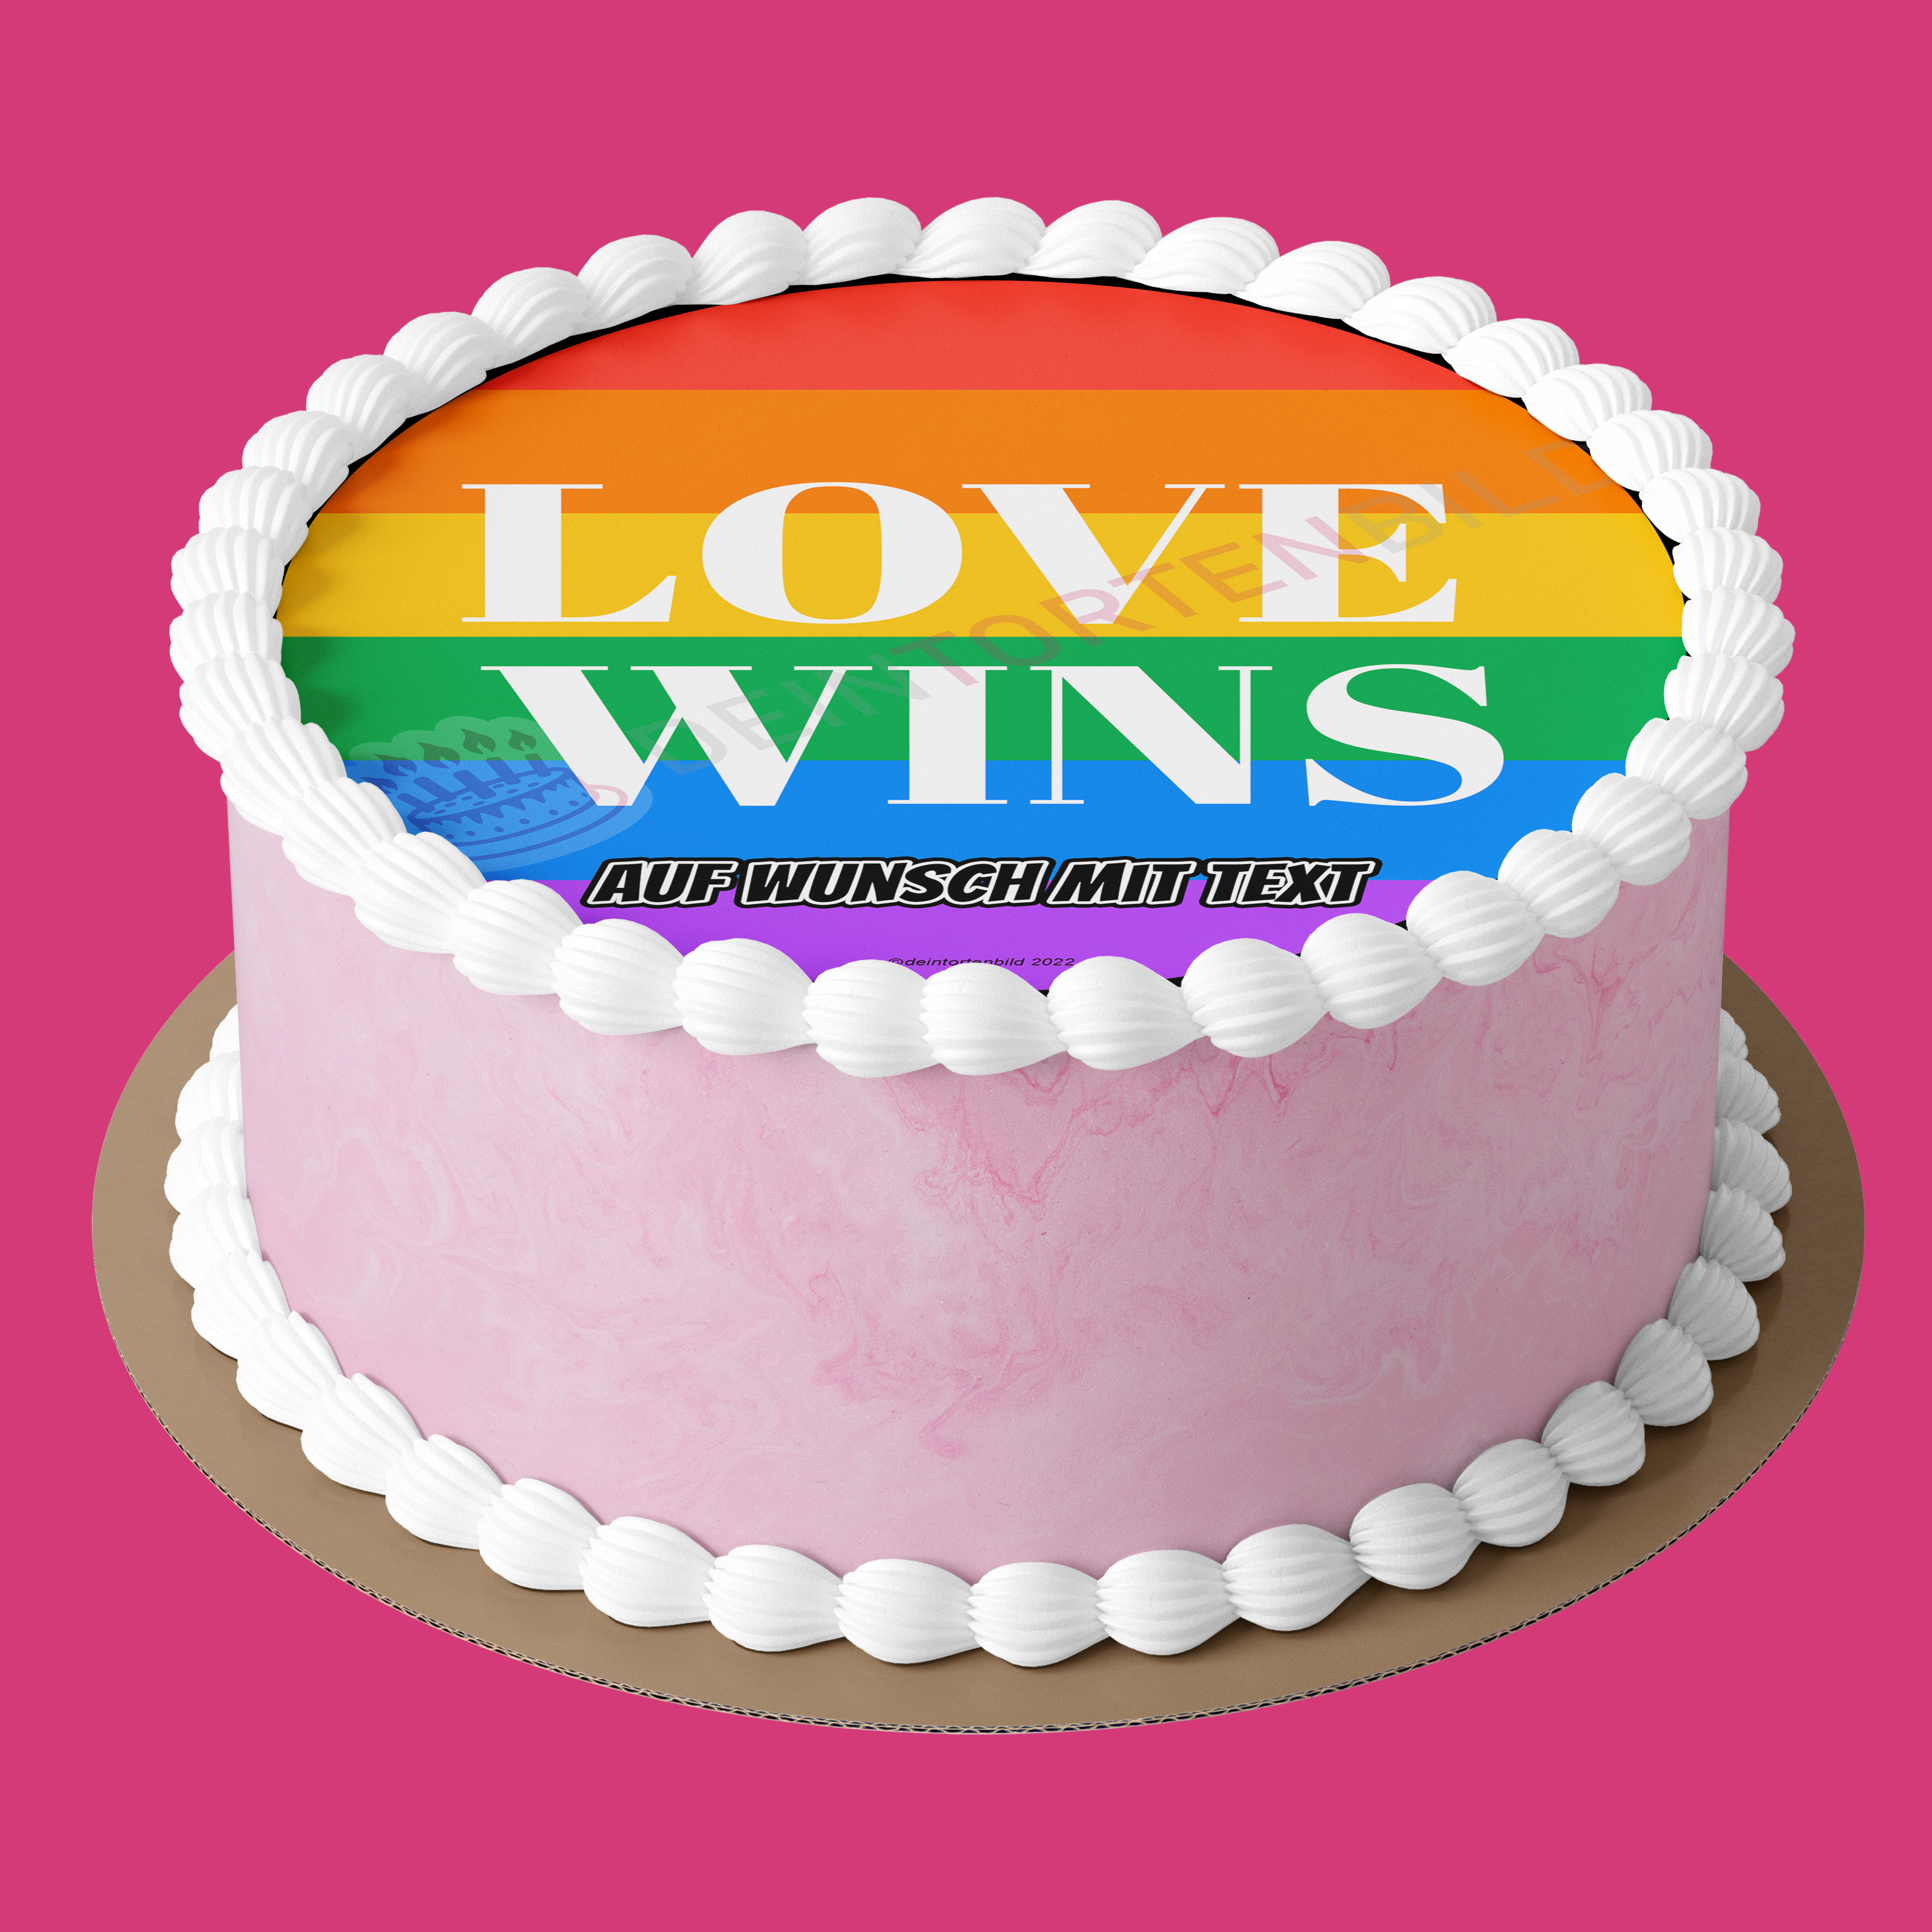 LGBTQ+ Love wins - Deintortenbild.de Tortenaufleger aus Esspapier: Oblatenpapier, Zuckerpapier, Fondantpapier